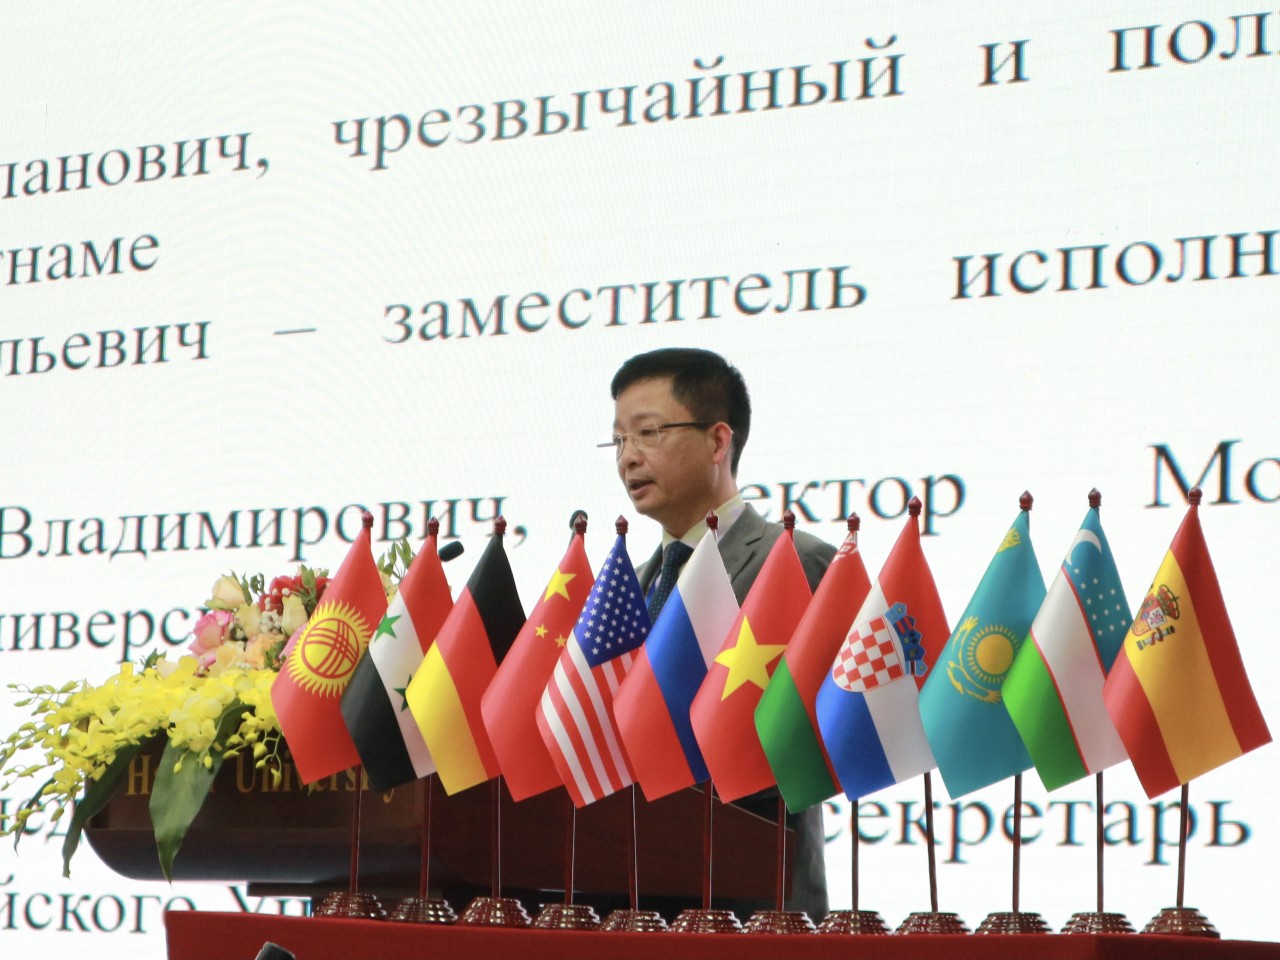 Hội thảo trao đổi học thuật giữa các nhà Nga ngữ học của Việt Nam và Nga